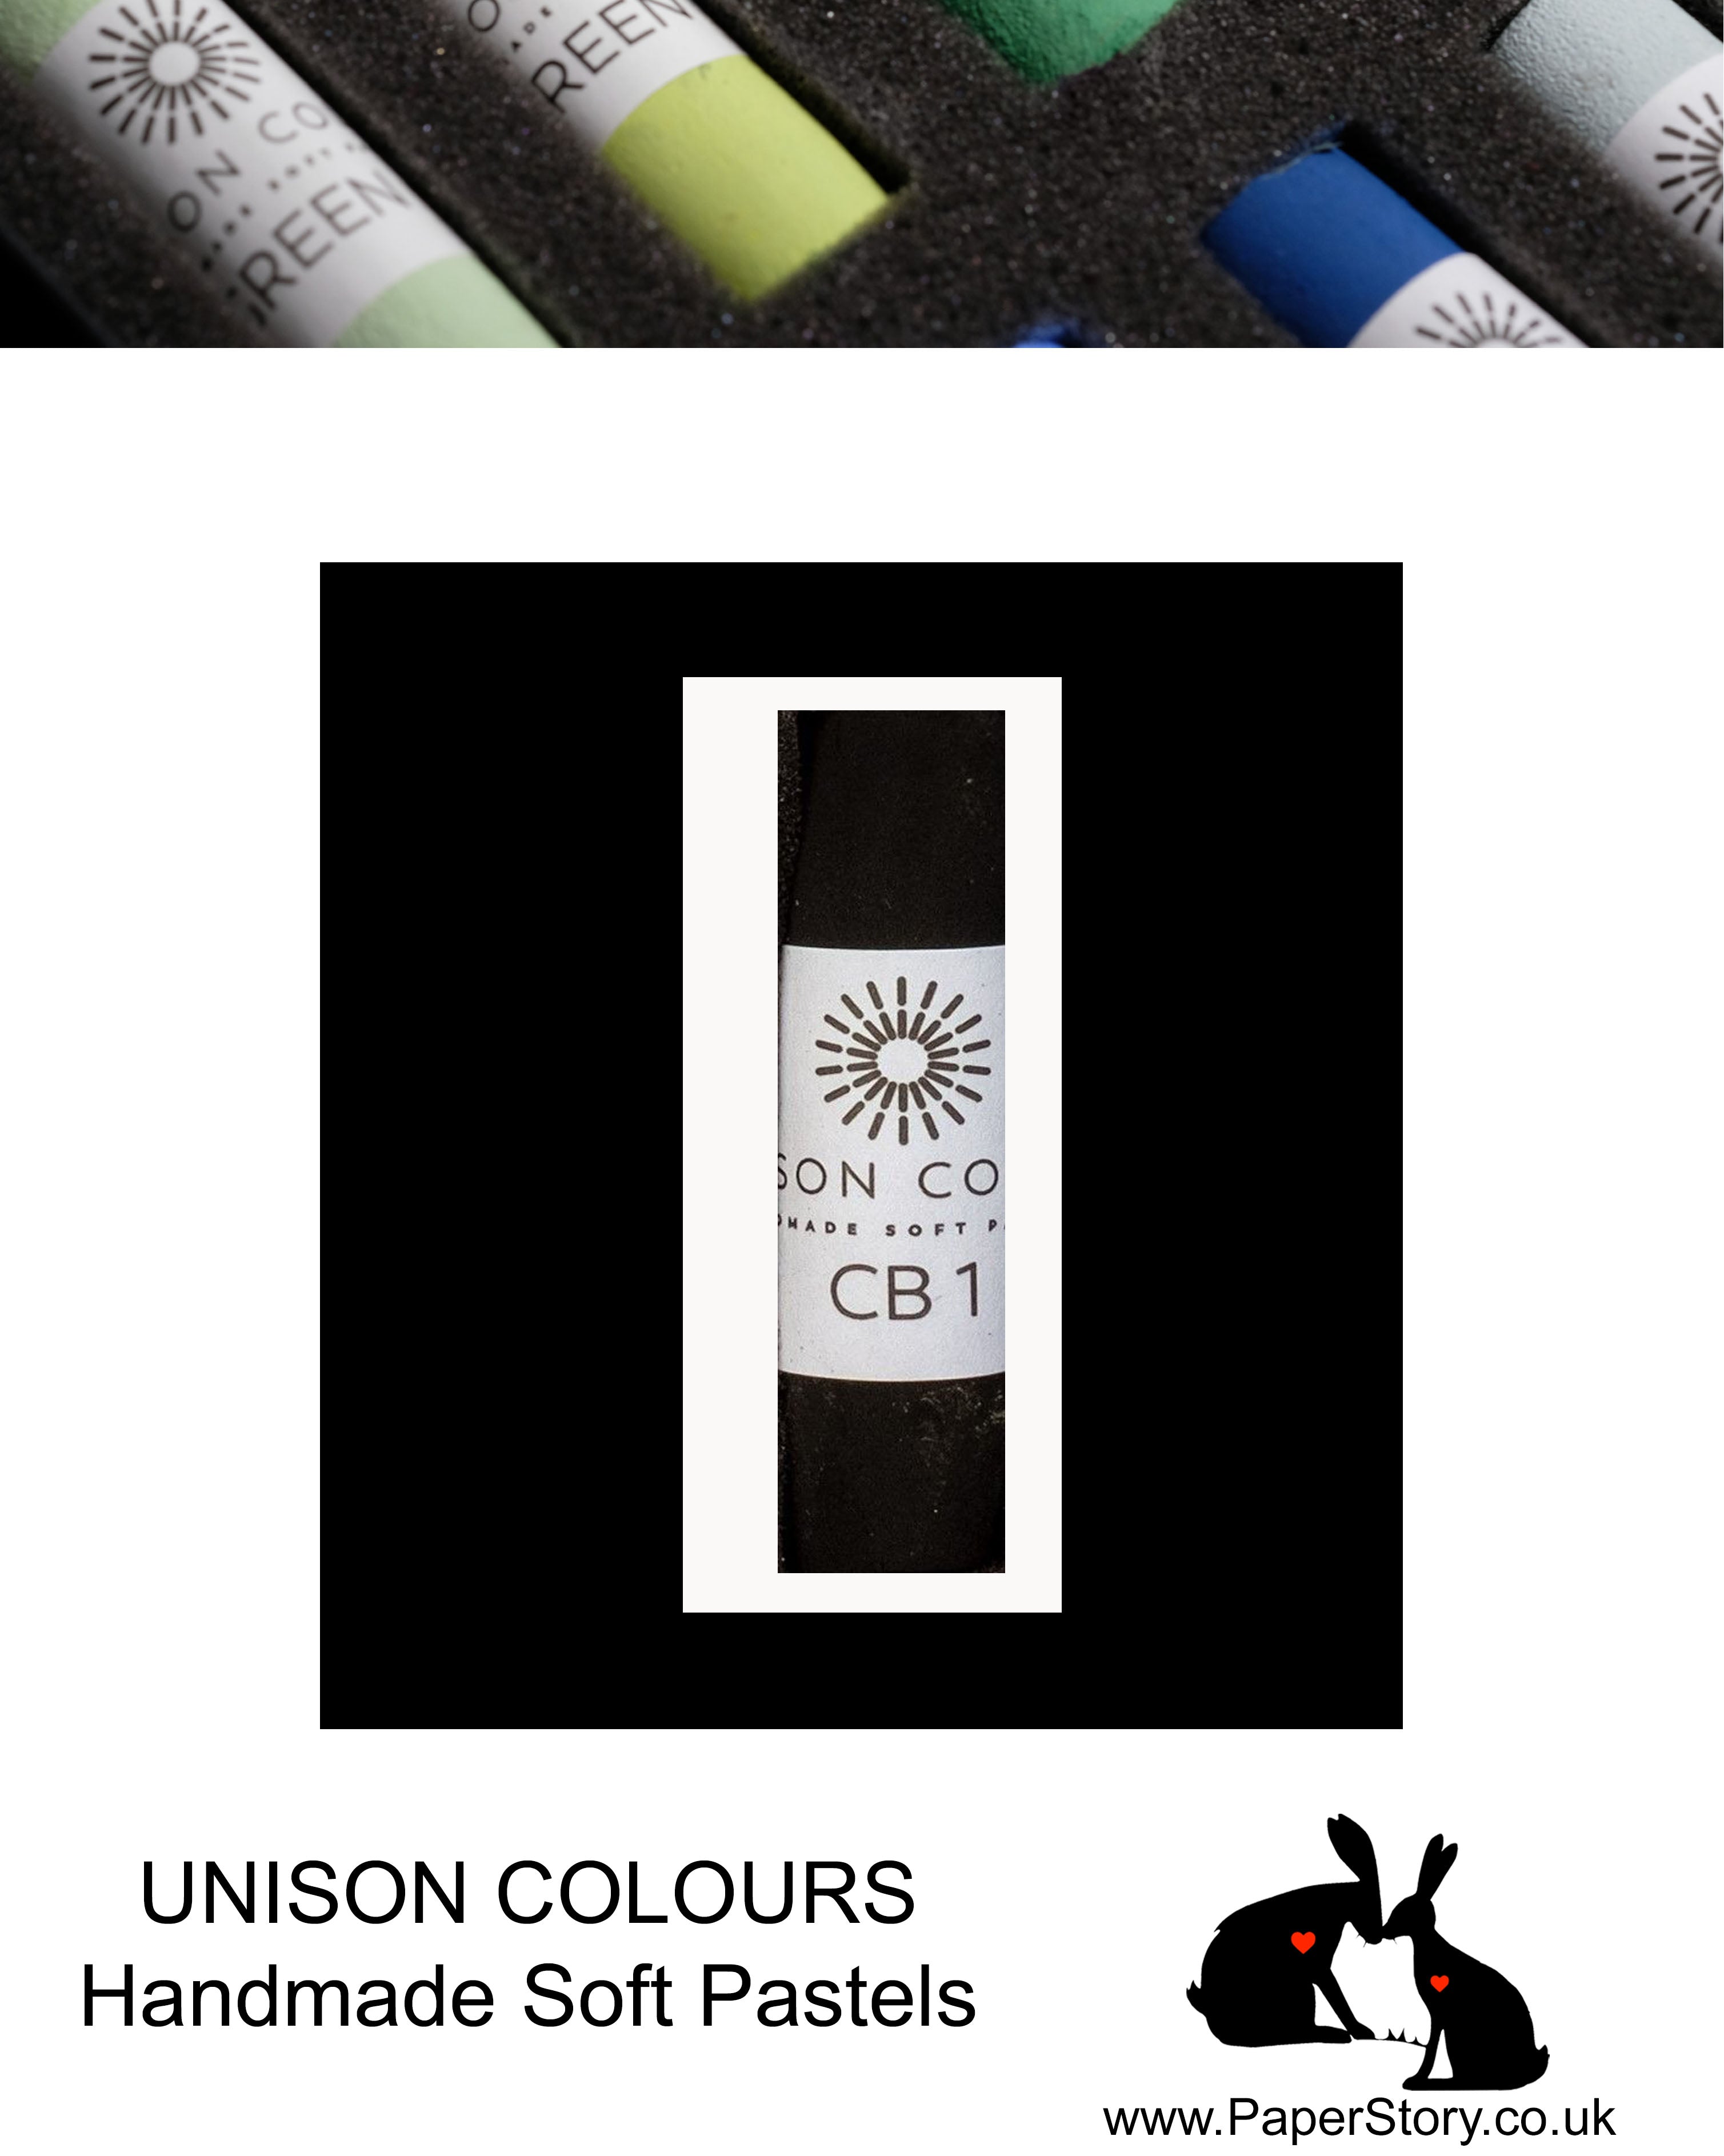 Unison Colour Handmade Soft Pastels Carbon Black 1 - Size Regular